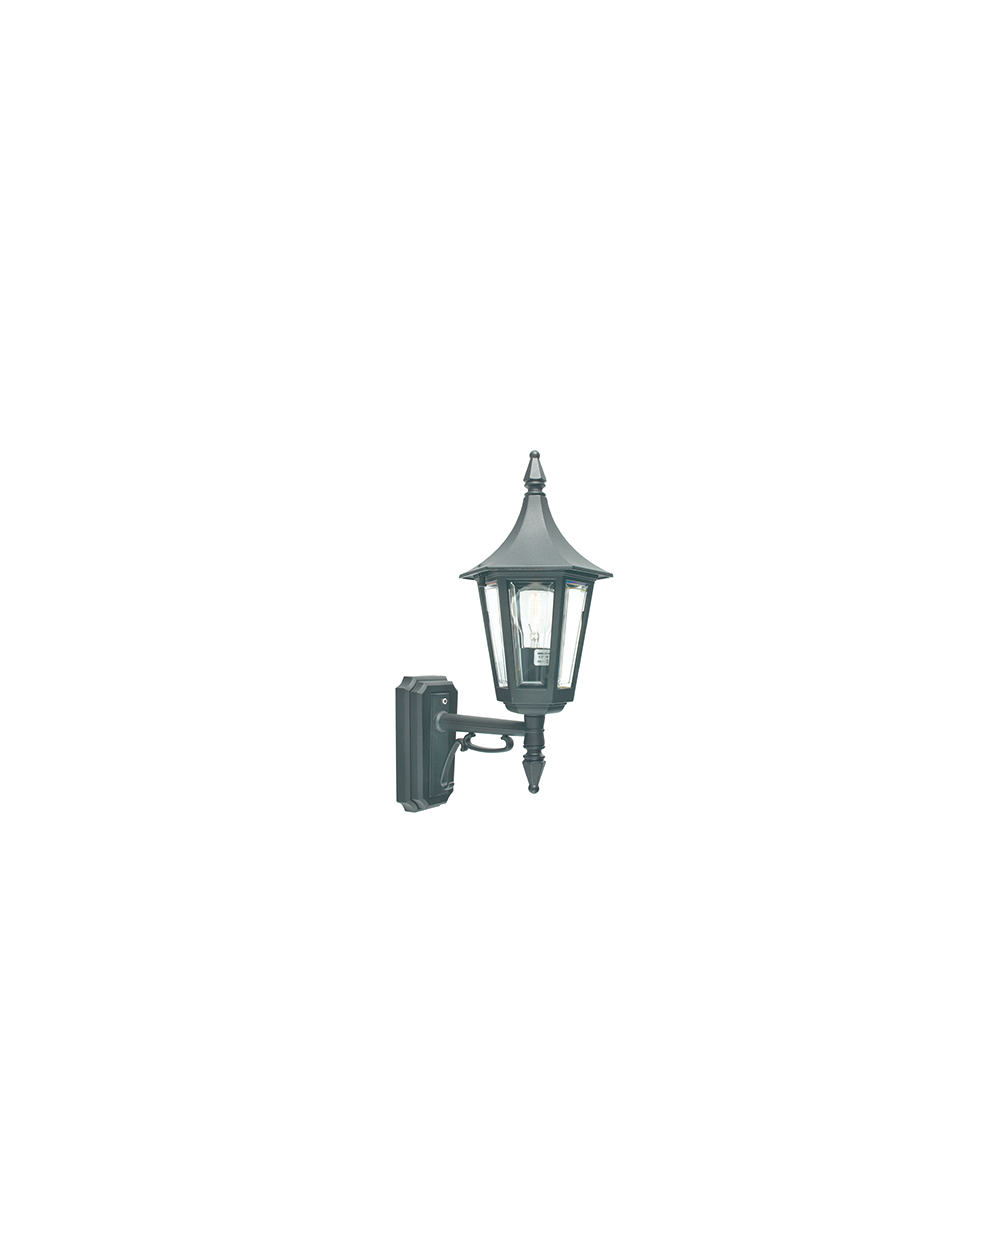 Lampa ścienna / kinkiet Rimini - Norlys oprawa zewnętrzna klasyczna czarna lub biała